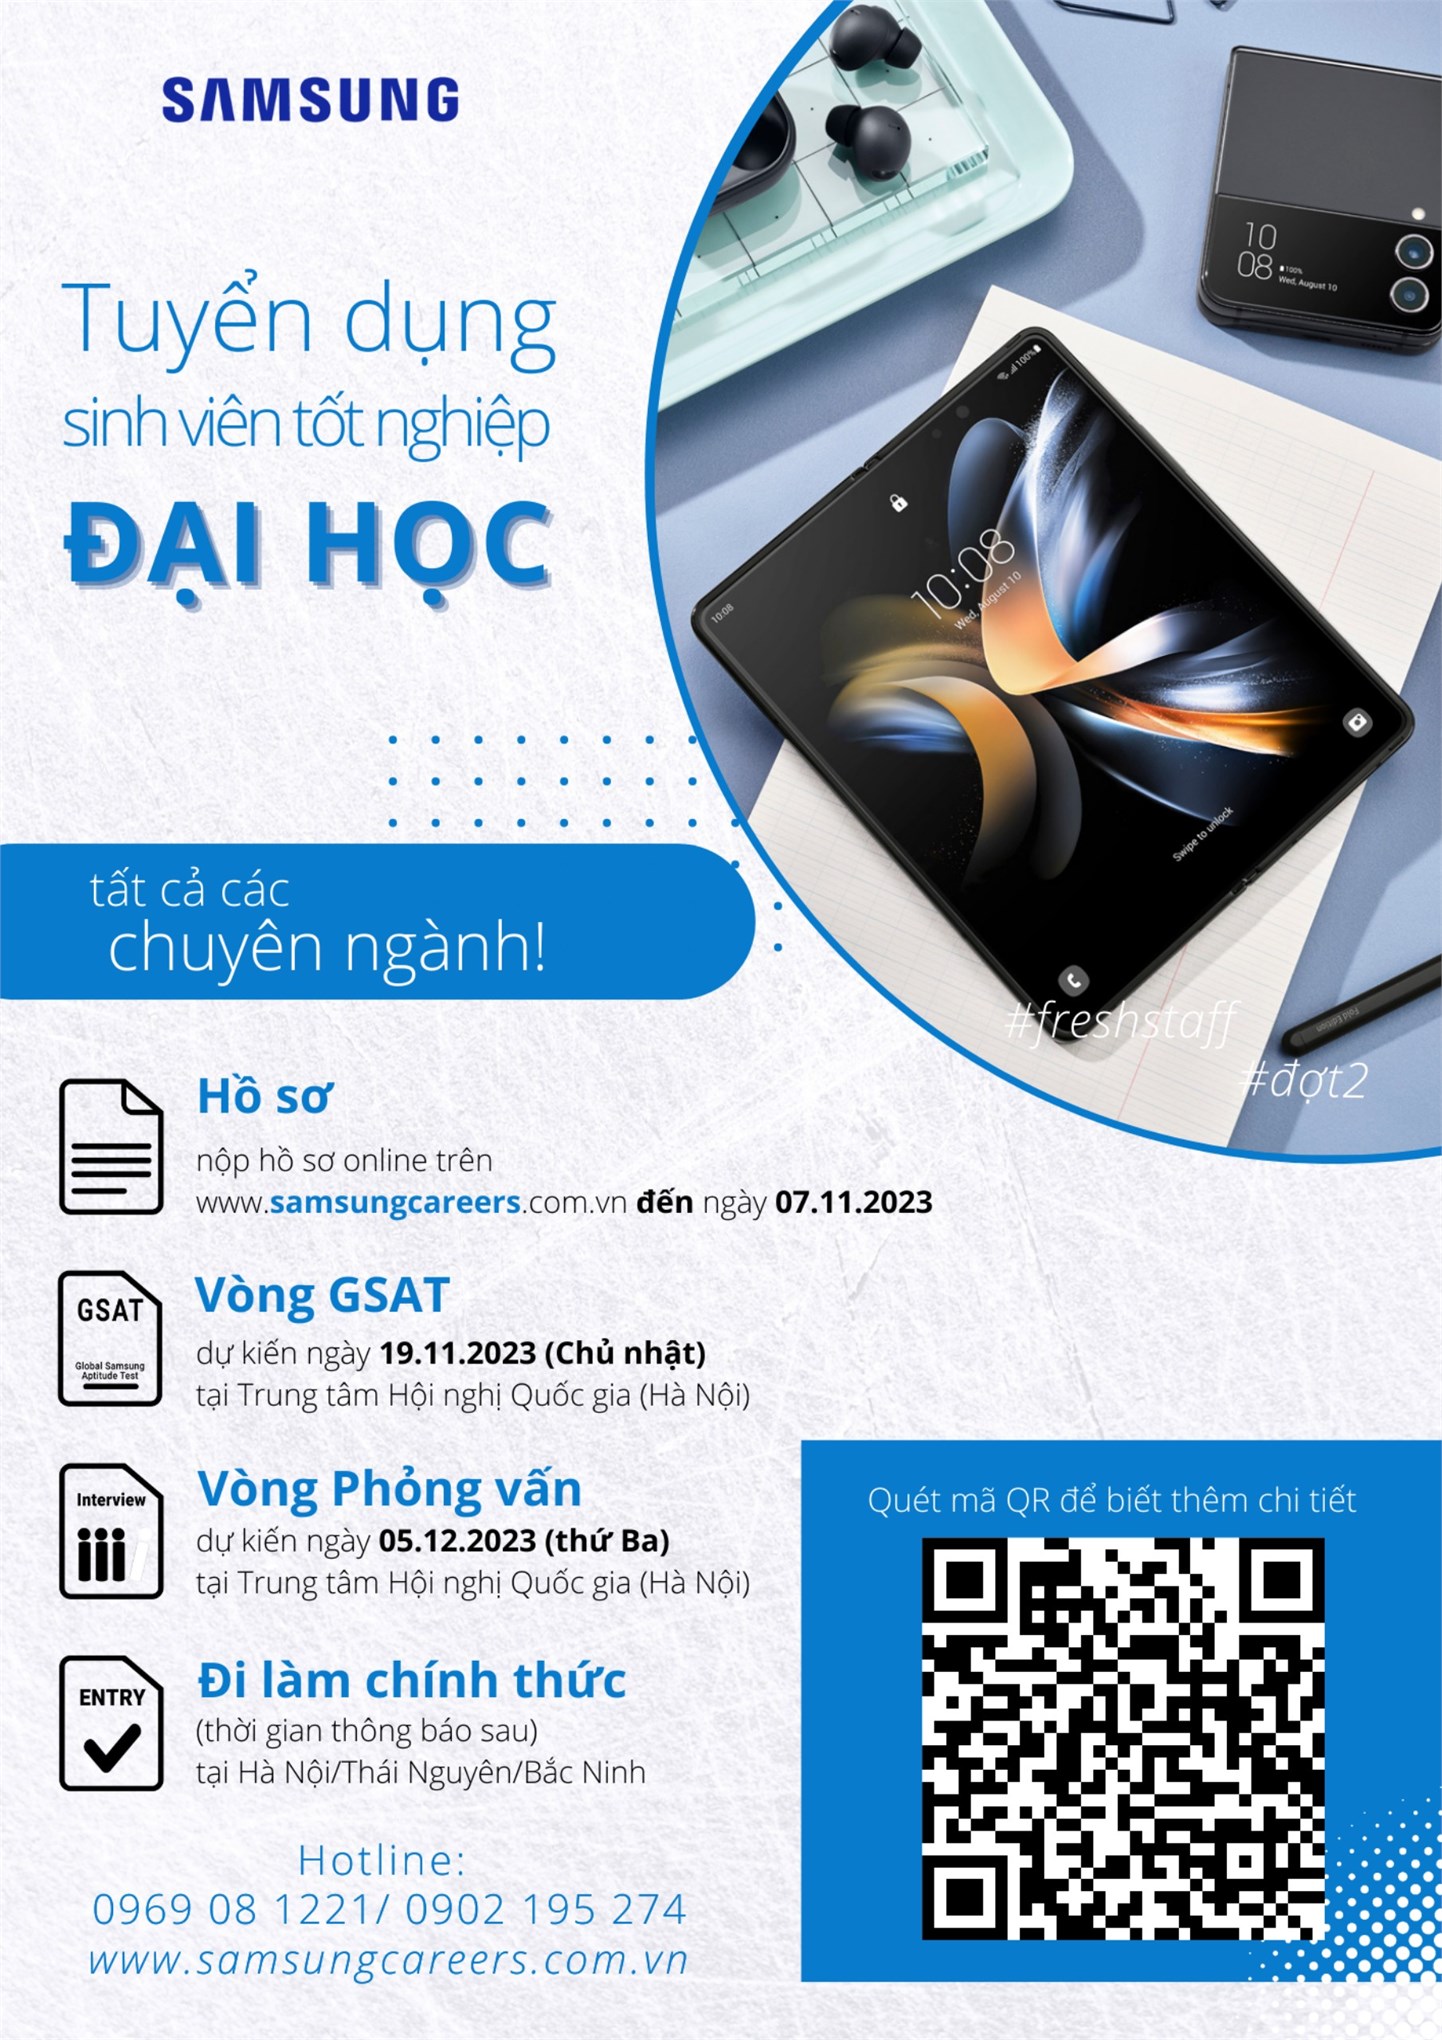 Kế hoạch tổ chức Hội thảo việc làm, hướng nghiệp của Công ty TNHH Samsung Electronics Việt Nam